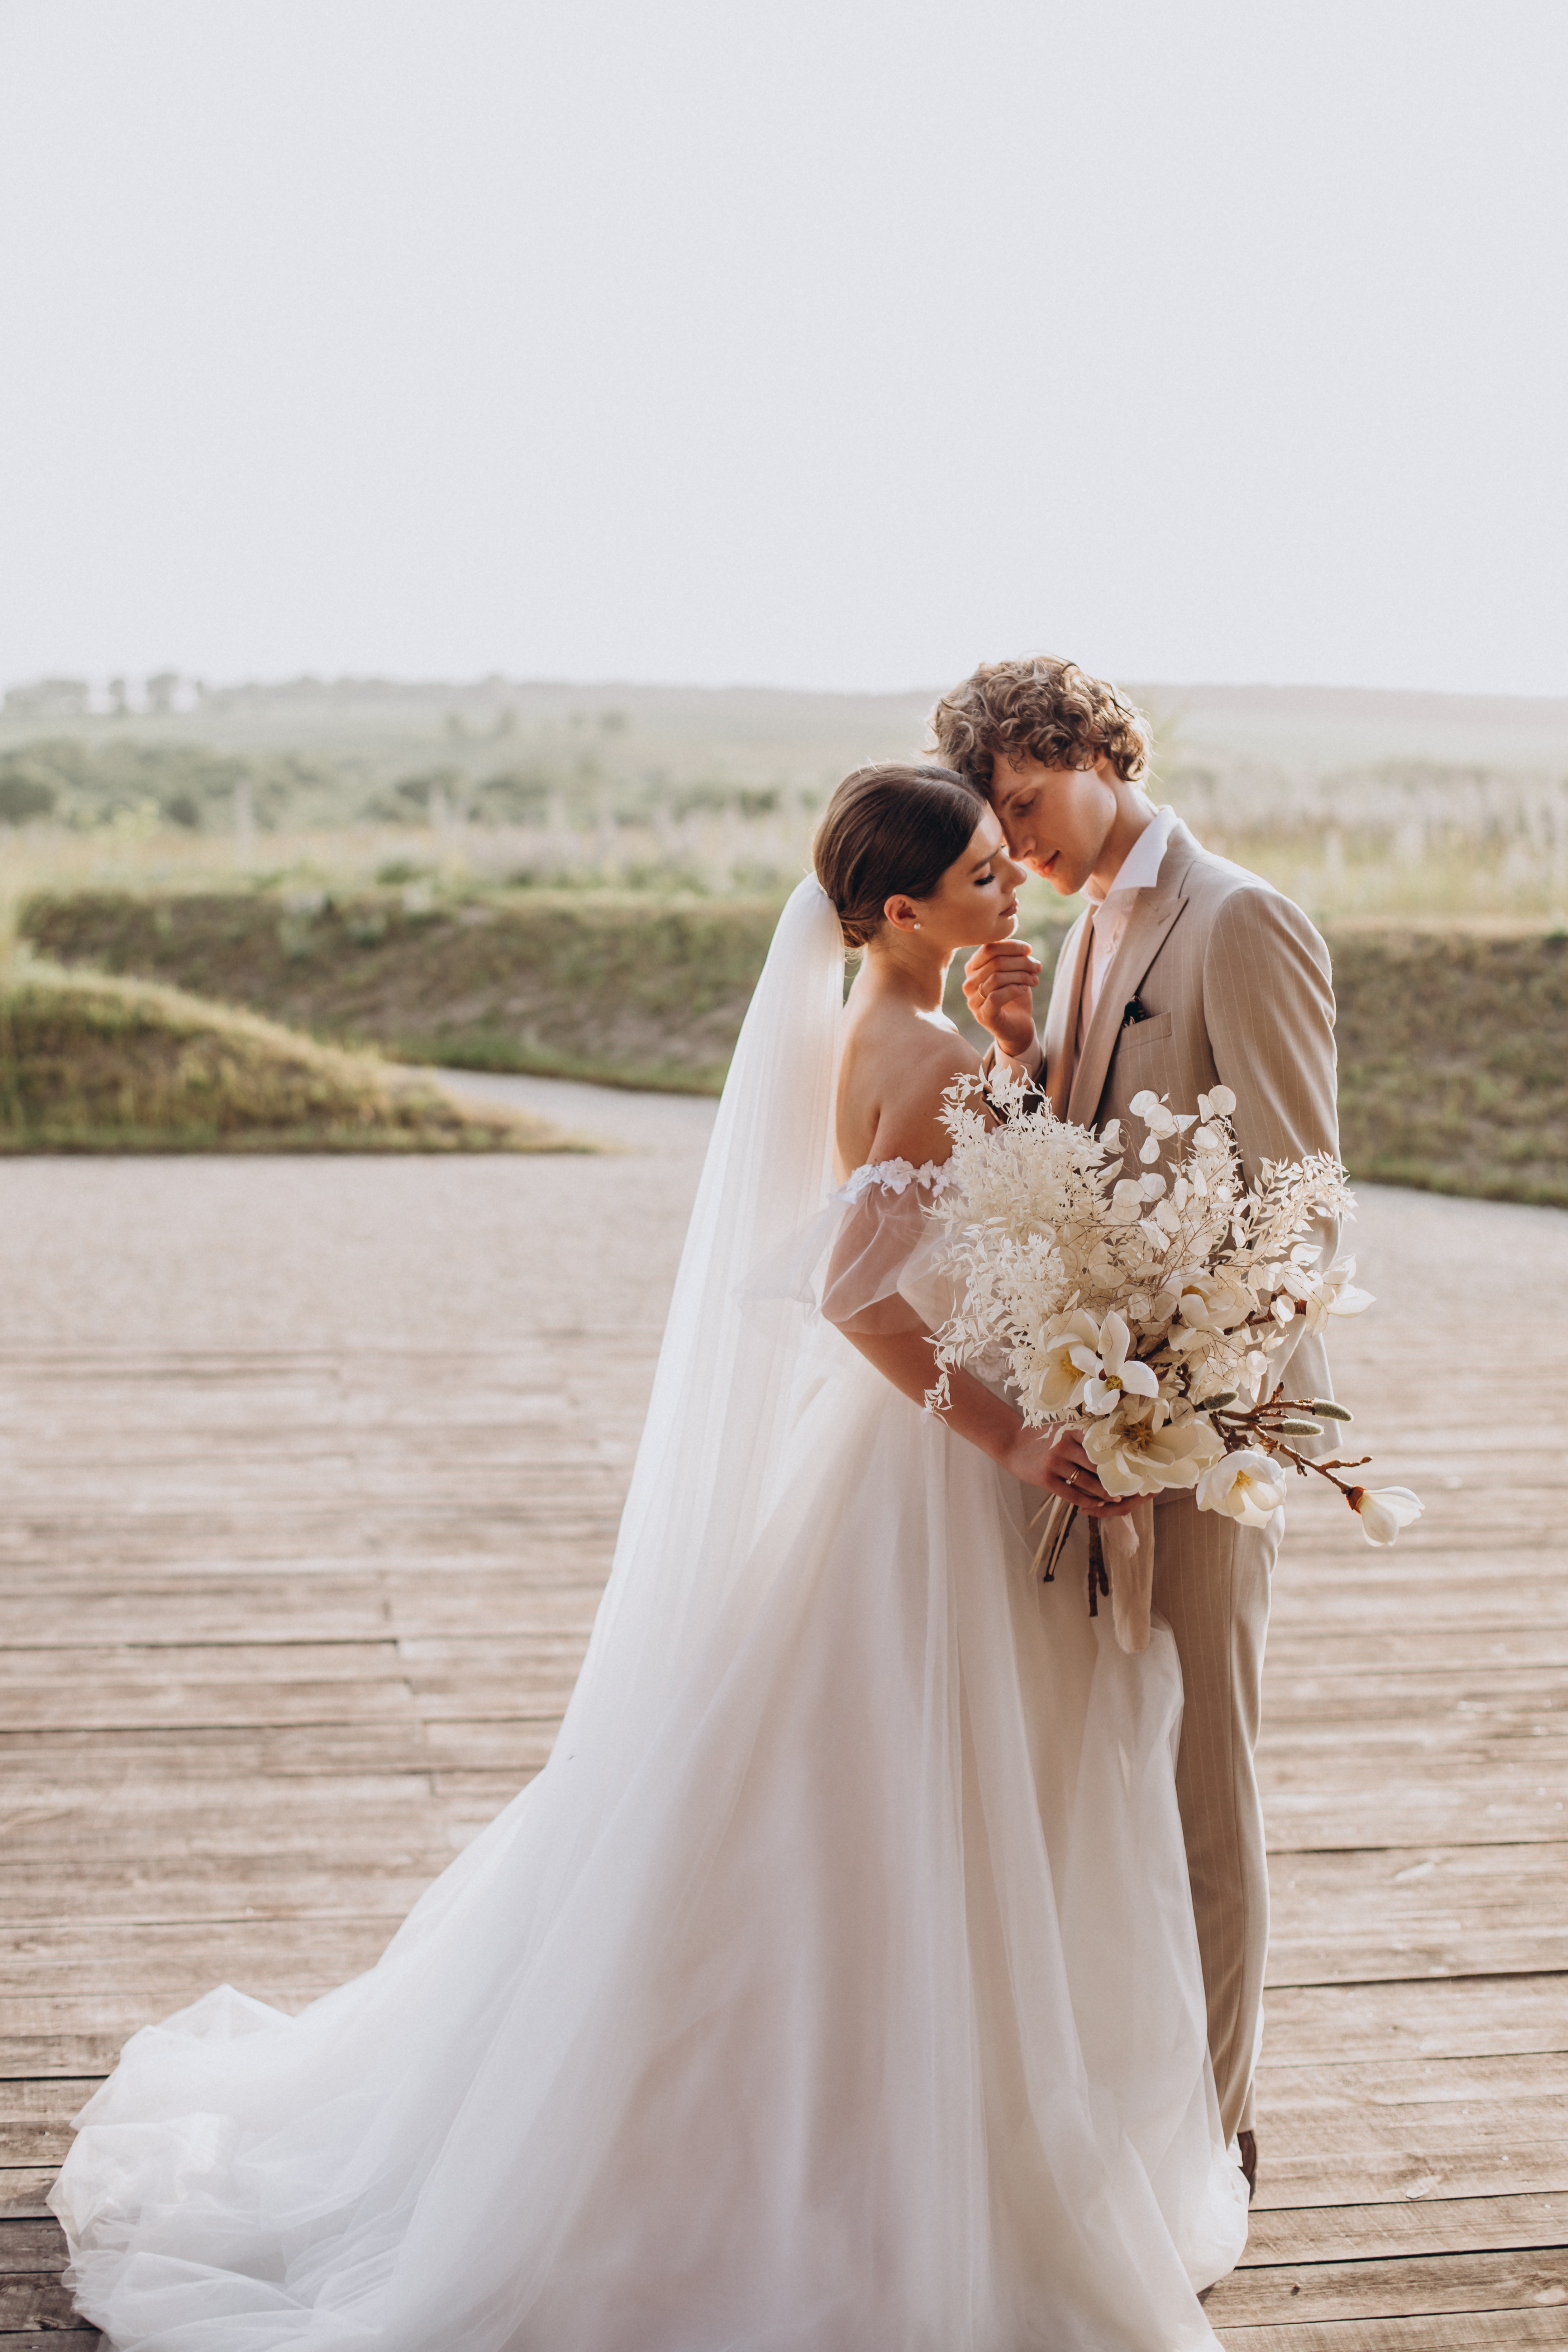 Paar bei ihrer Hochzeit | Quelle: Shutterstock